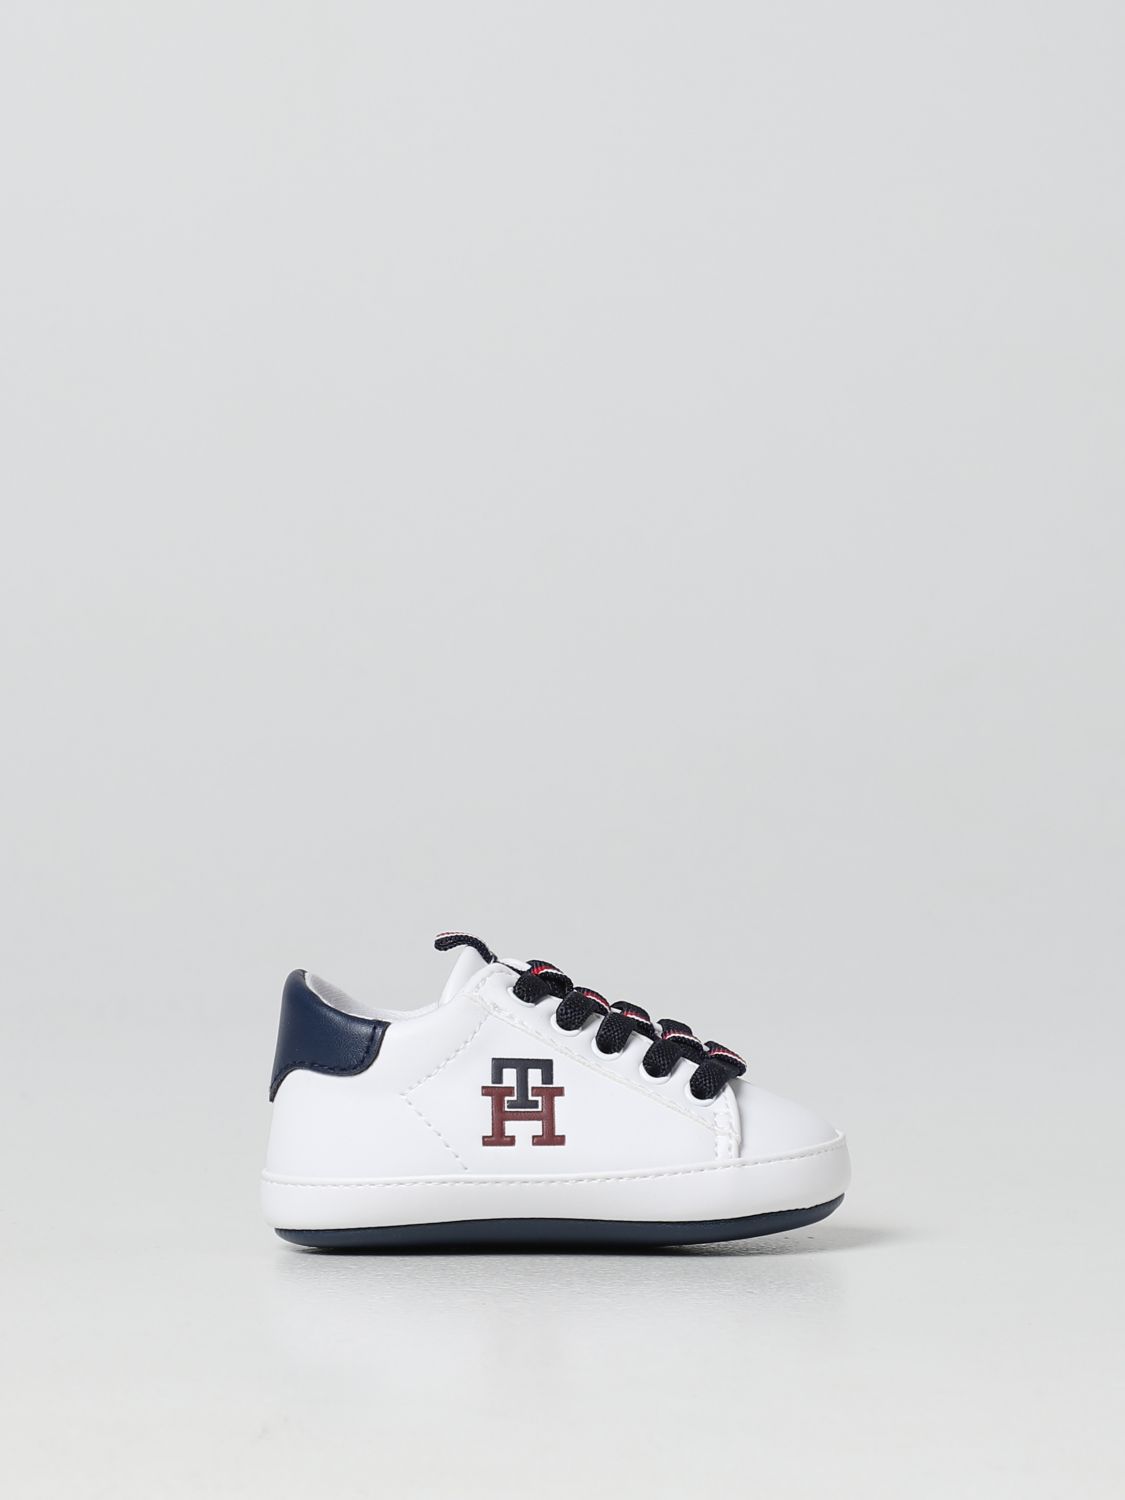 TOMMY HILFIGER: Zapatos para bebé, Blanco | Tommy Hilfiger T0B4324471433 en línea en GIGLIO.COM